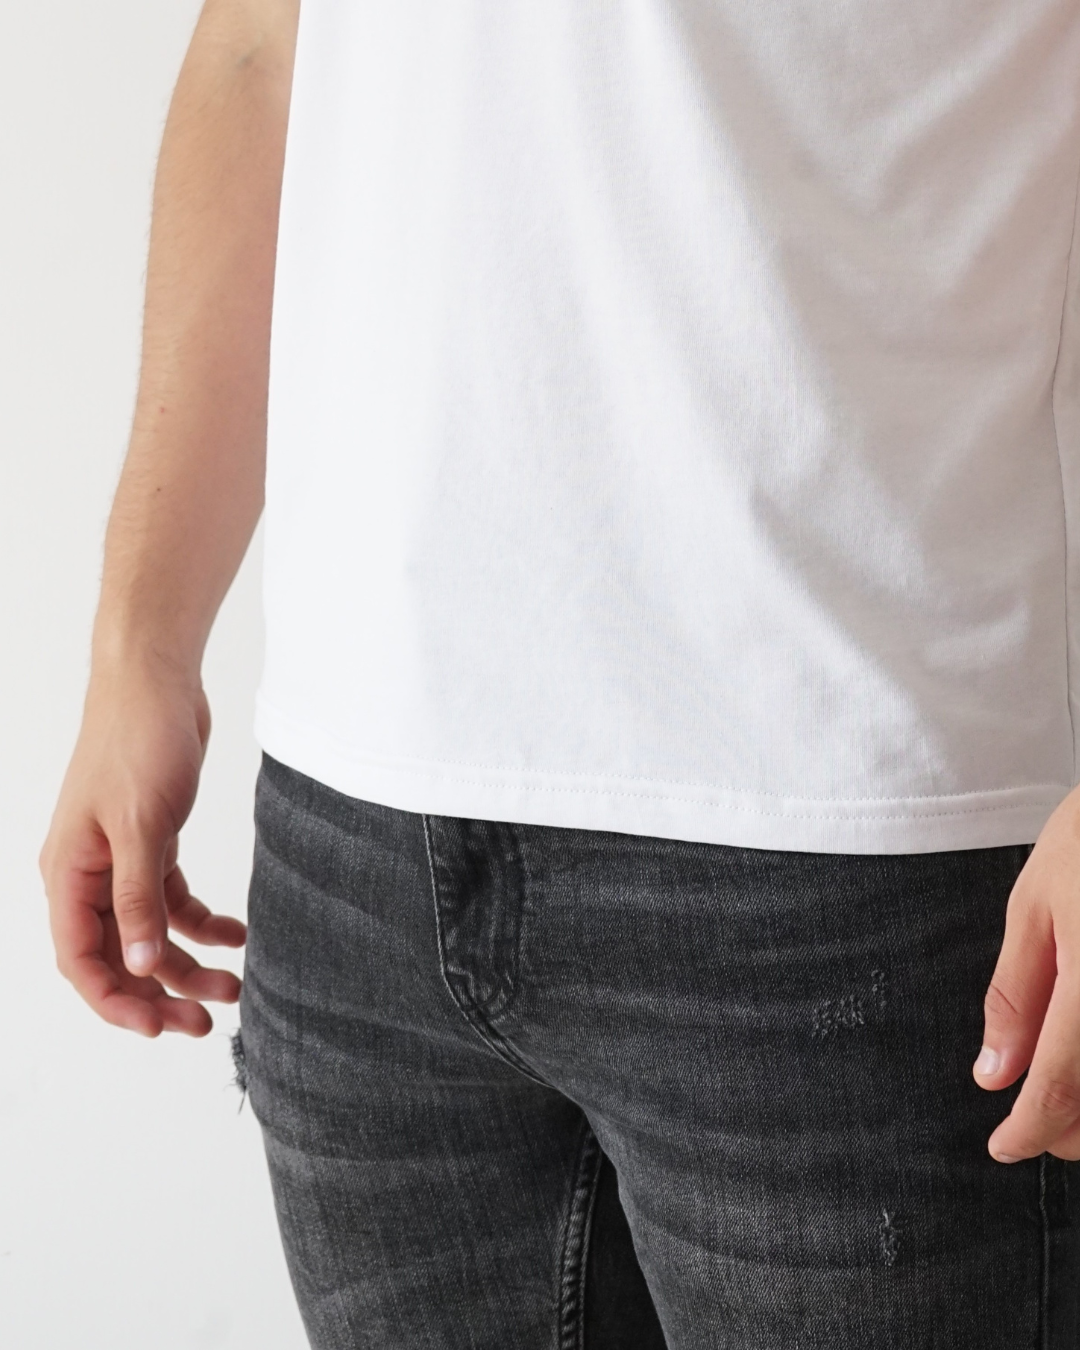 White T-shirt - Short Sleeve Henley Neck Straight Bottom